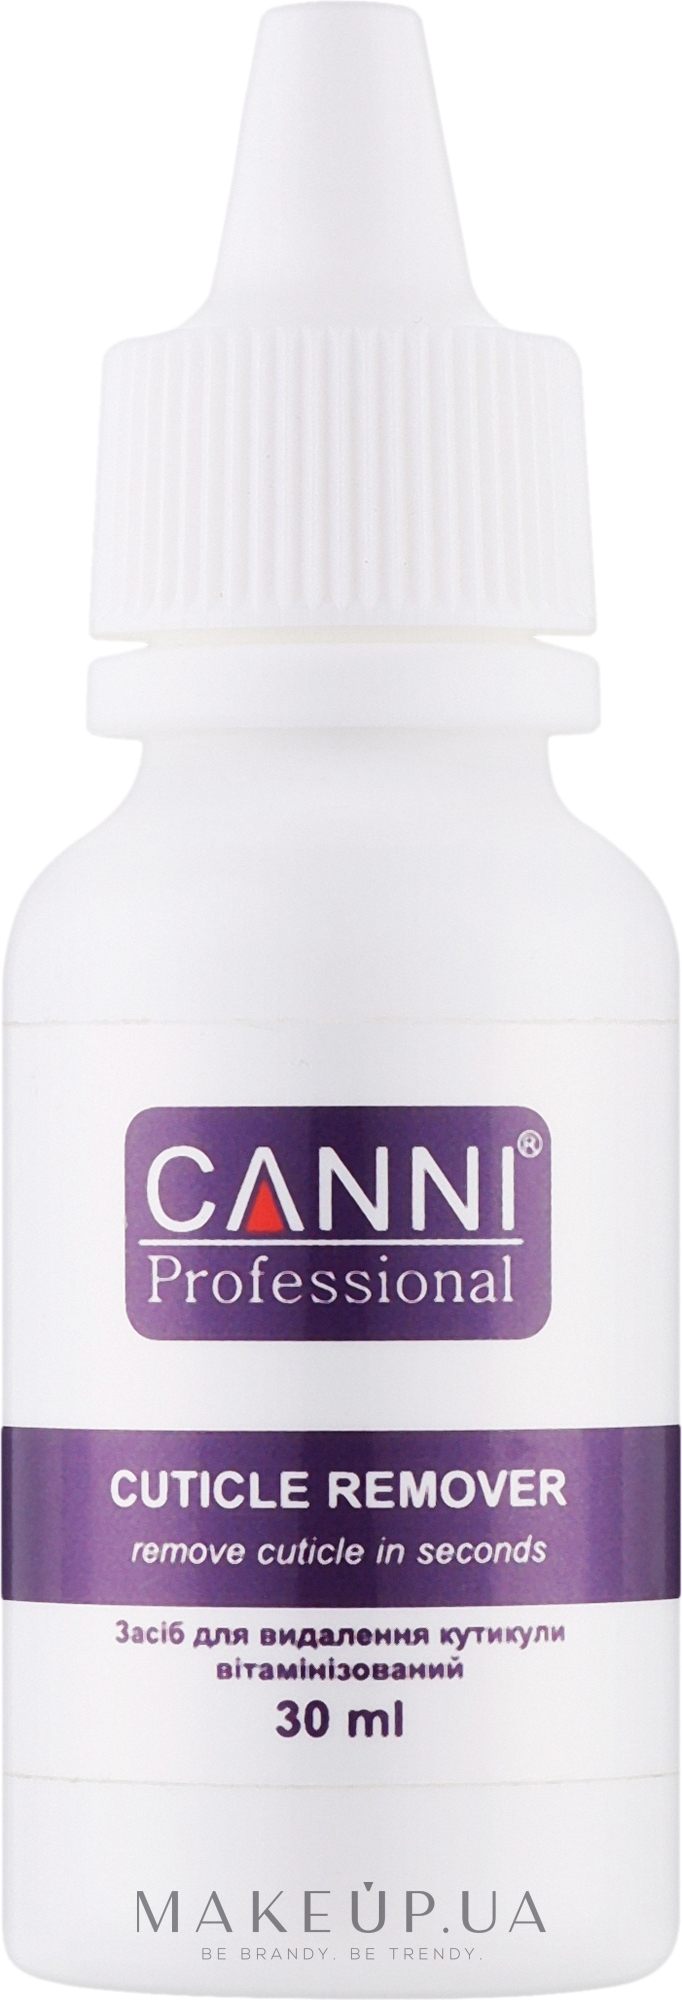 Вітамінінзований ремувер для кутикули  - Canni Cuticle Remover — фото 30ml